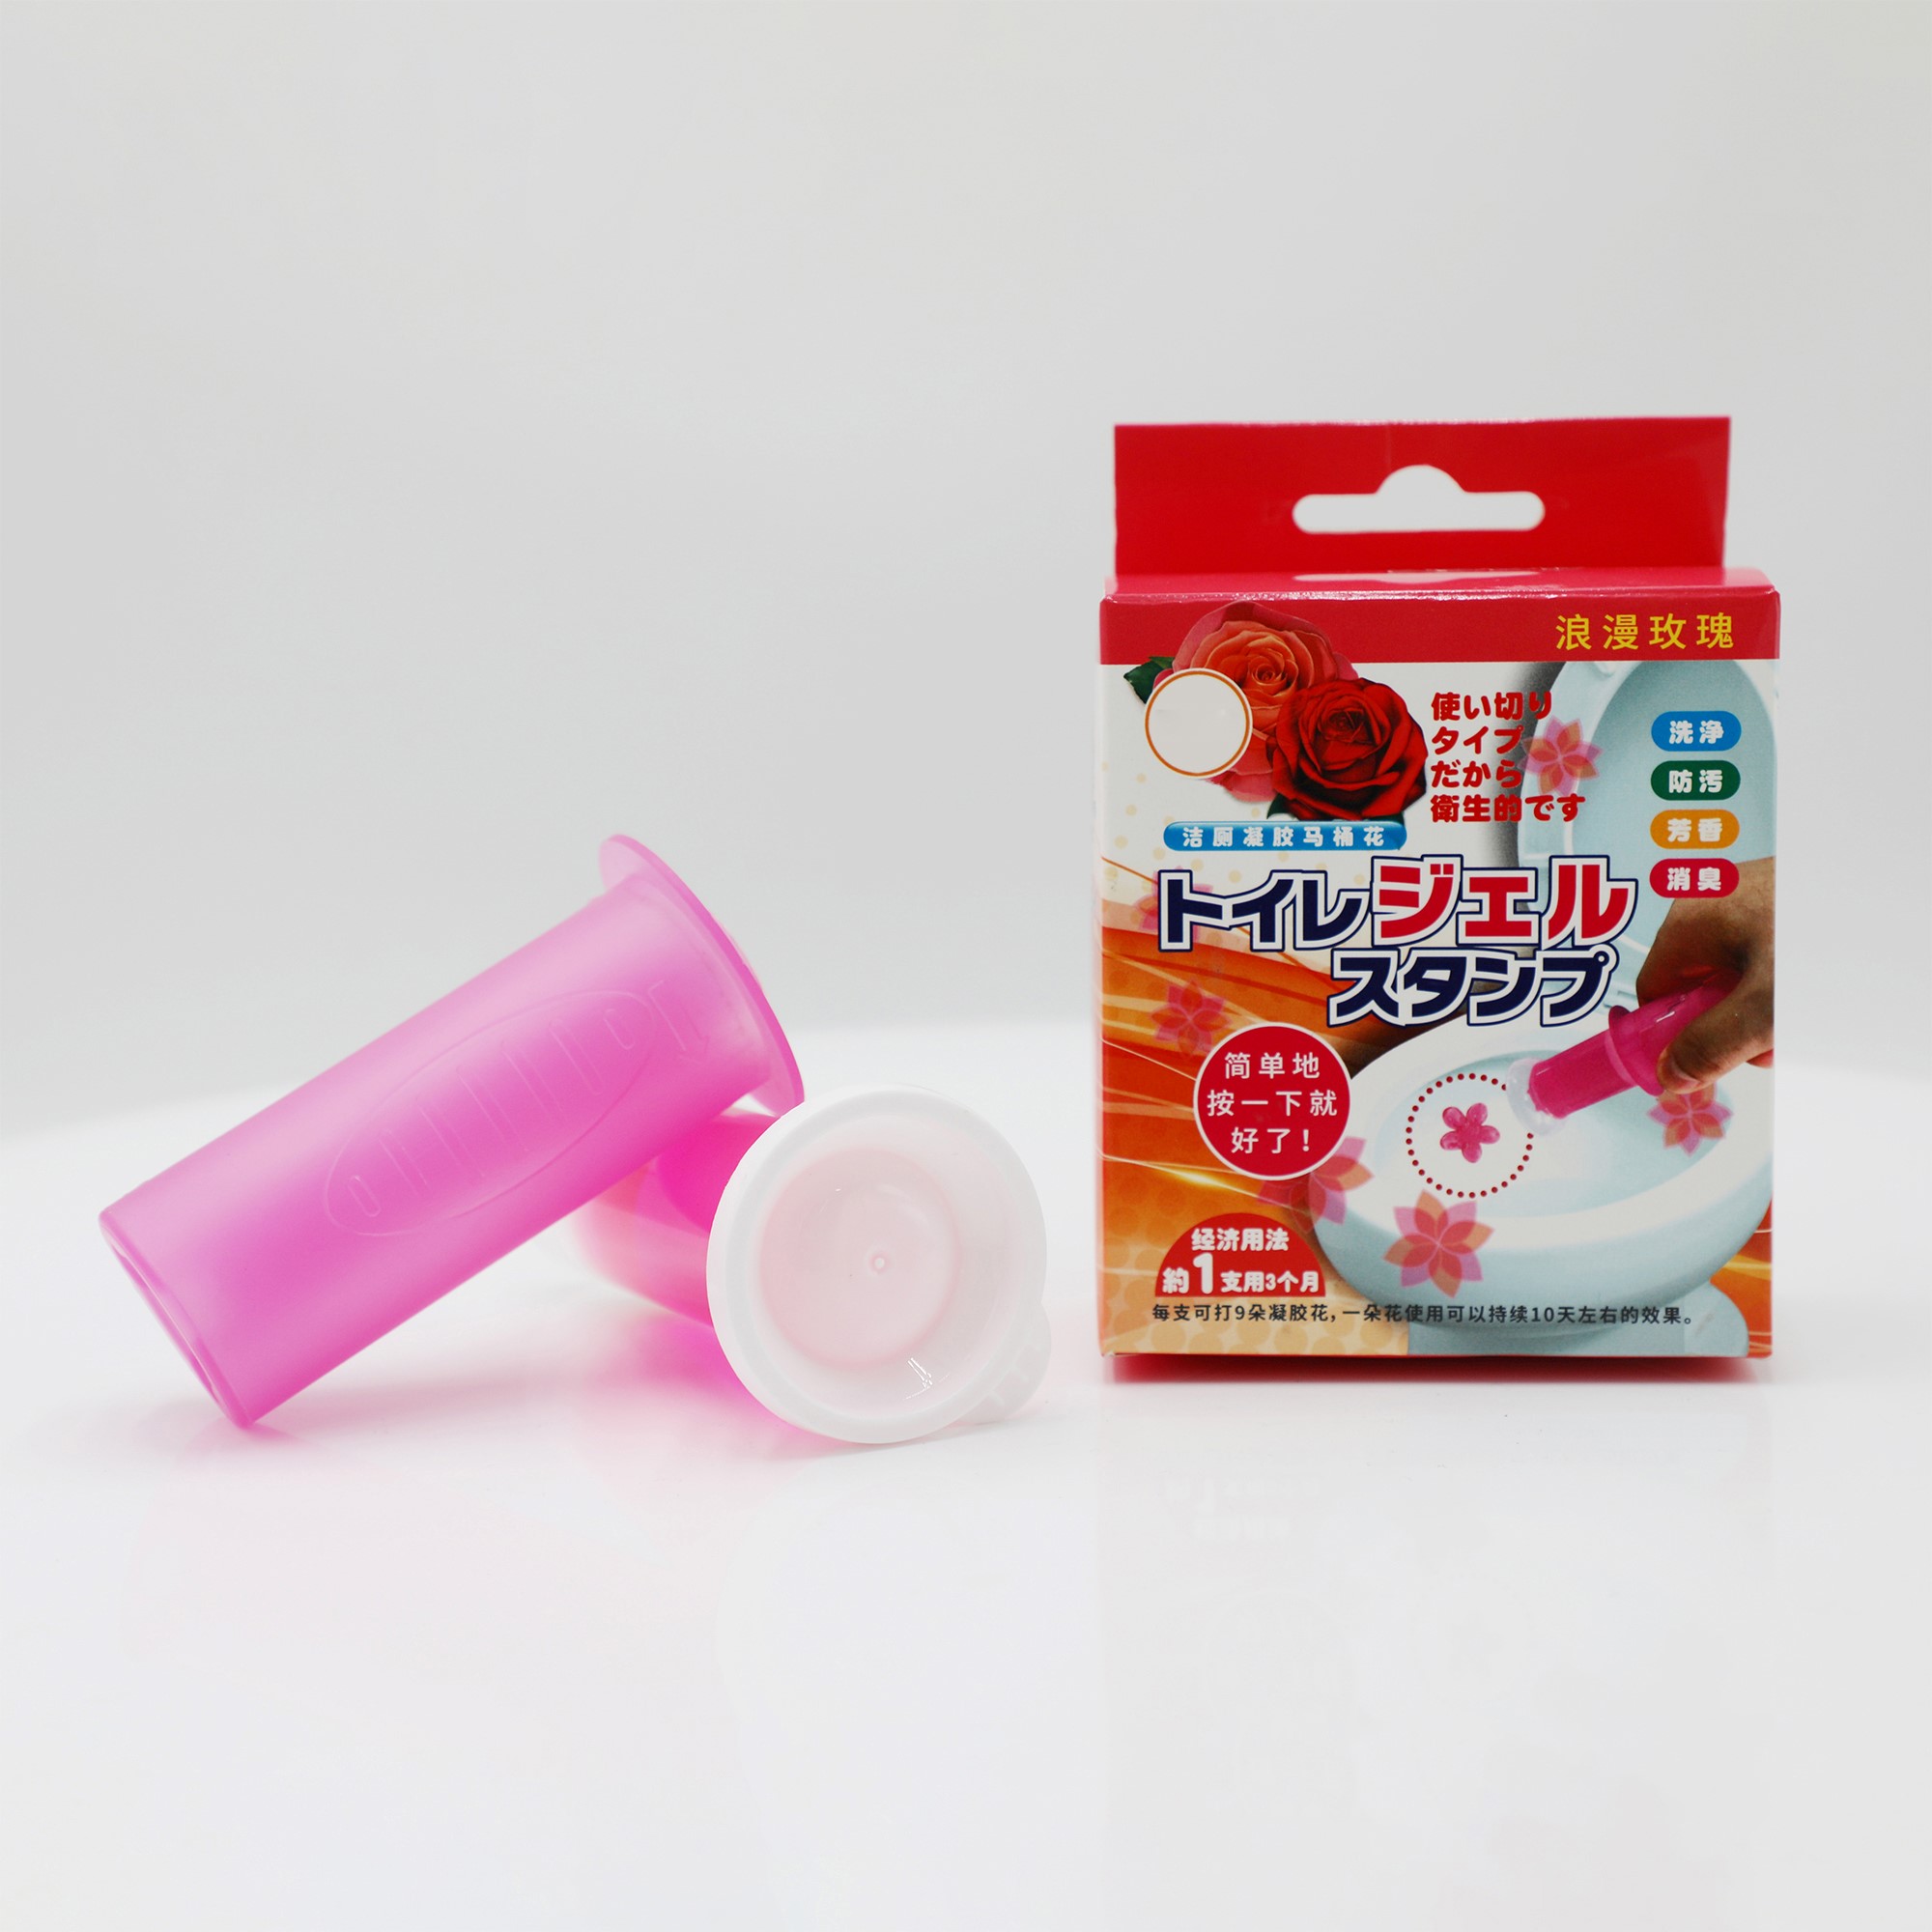 Piatto per la pulizia della toilette in plastica rosa - Facile ed efficace 1*40 g